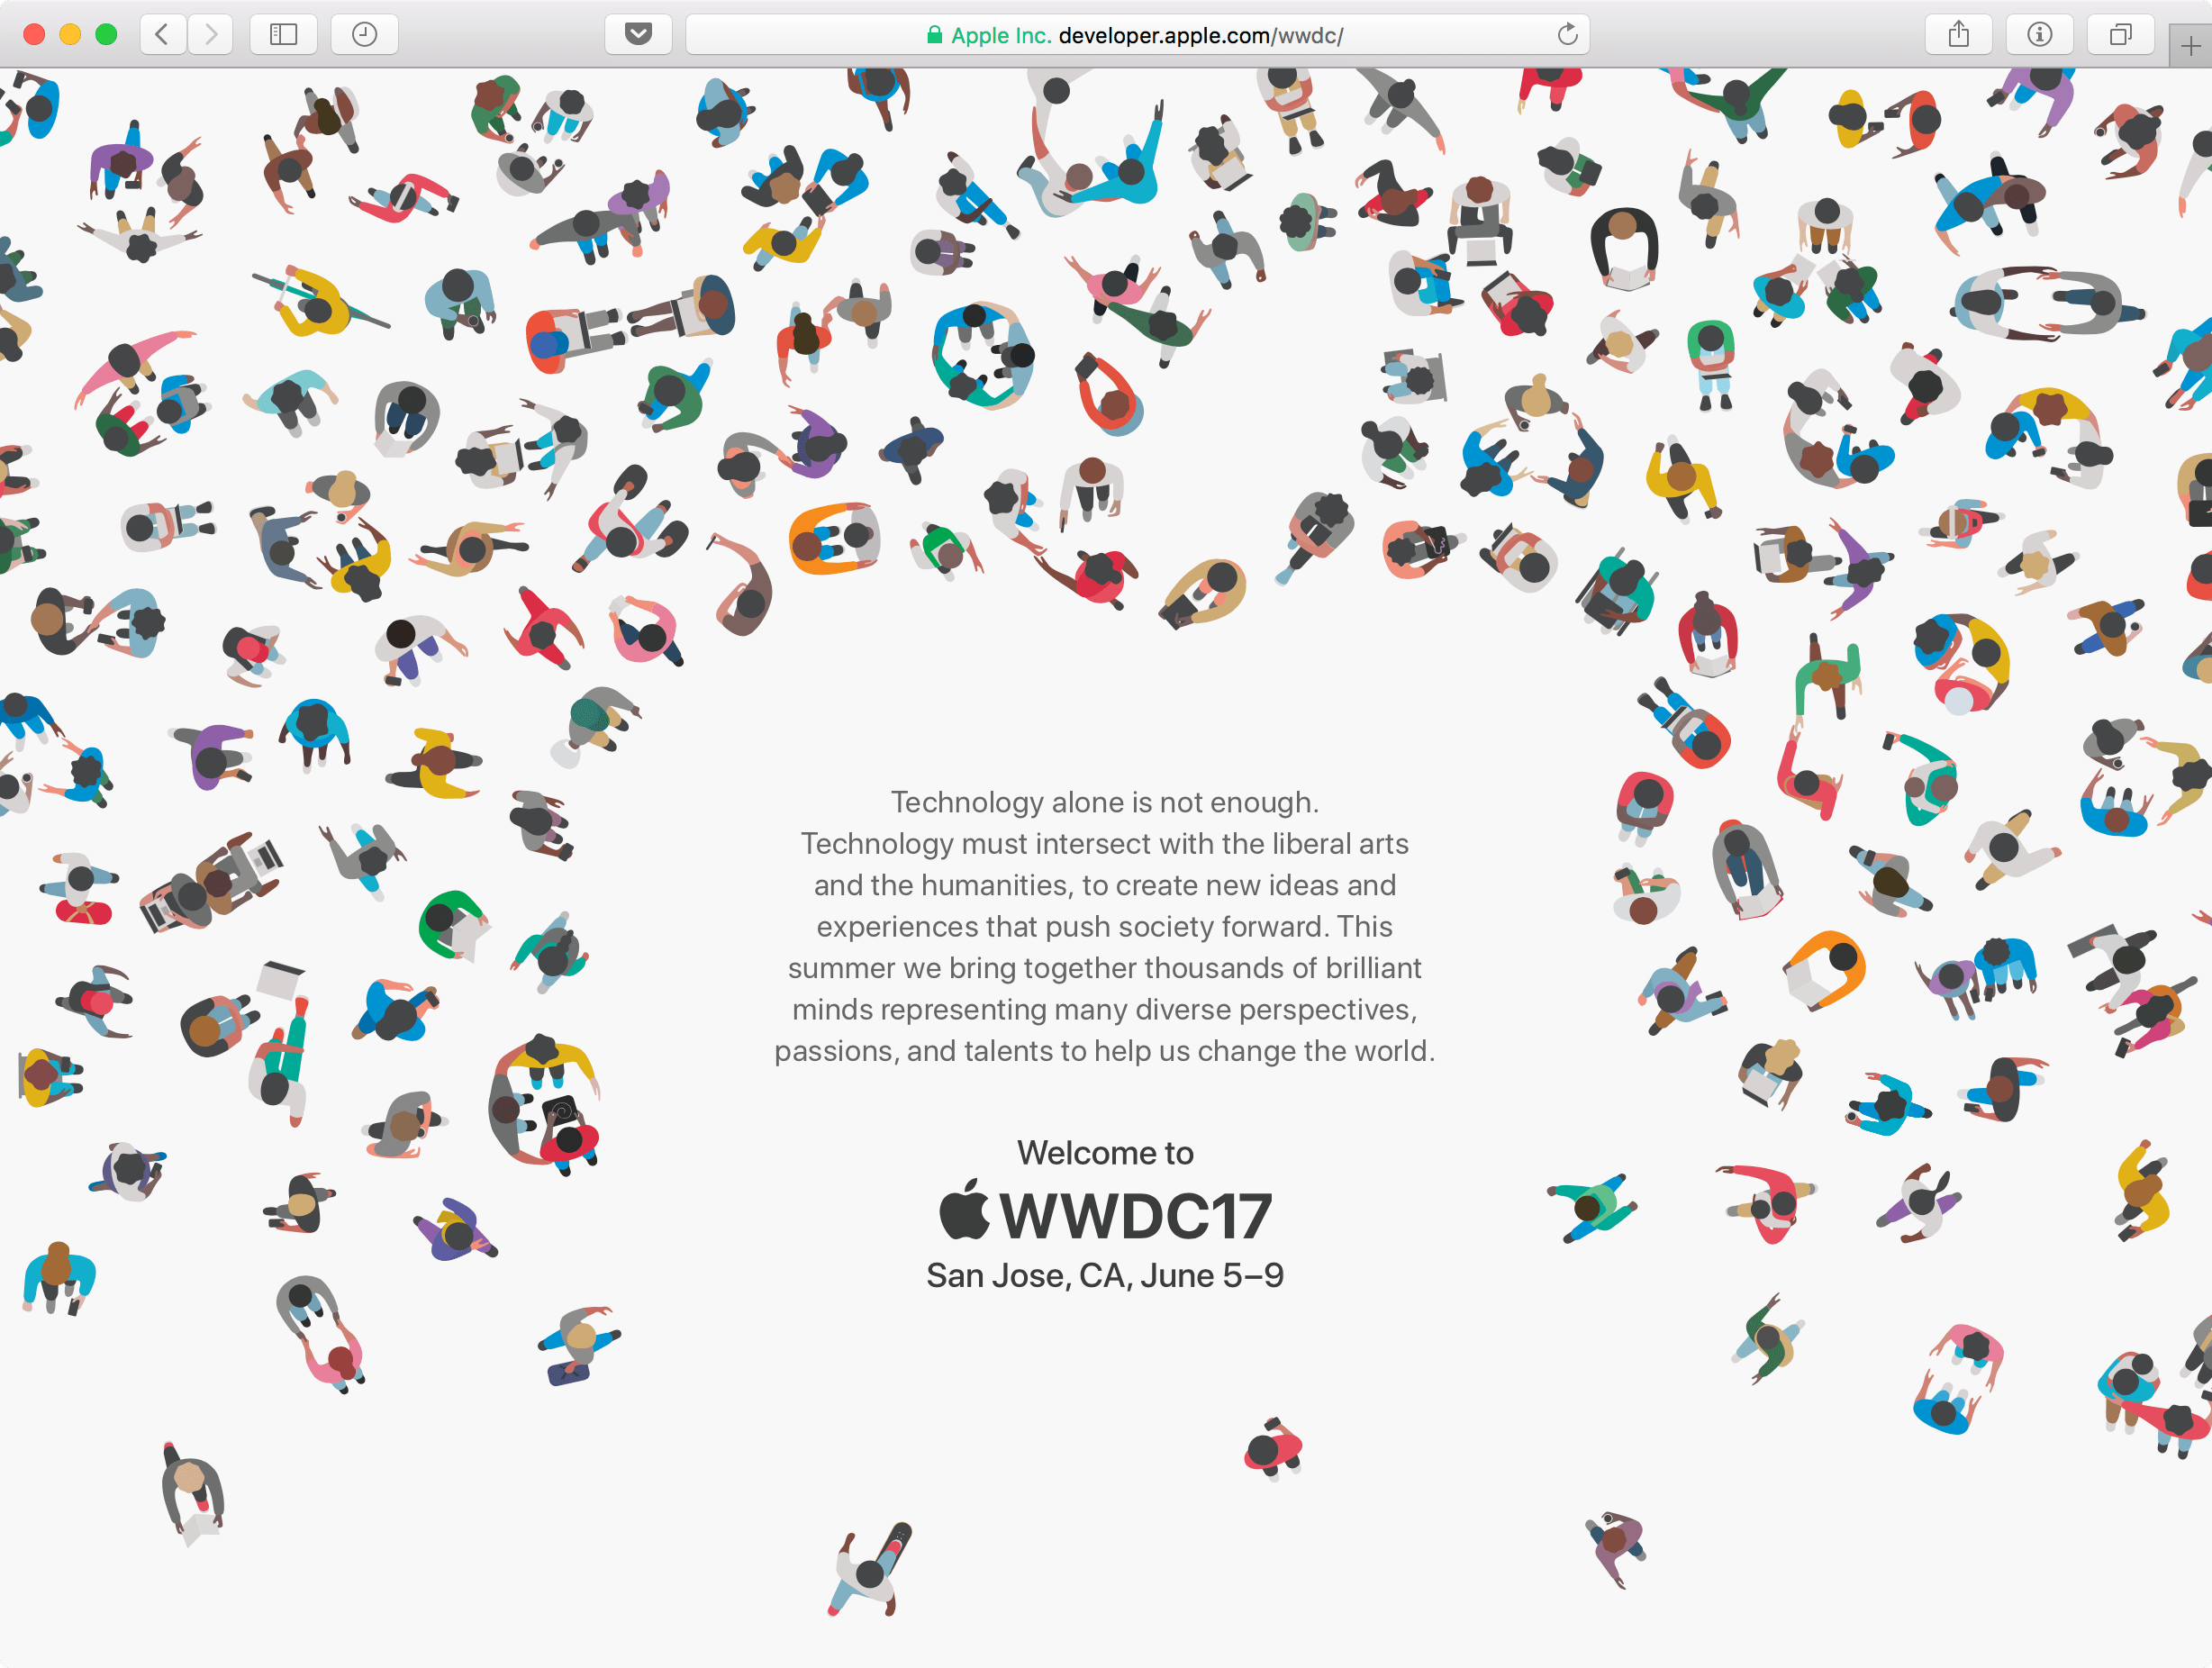 WWDC 17